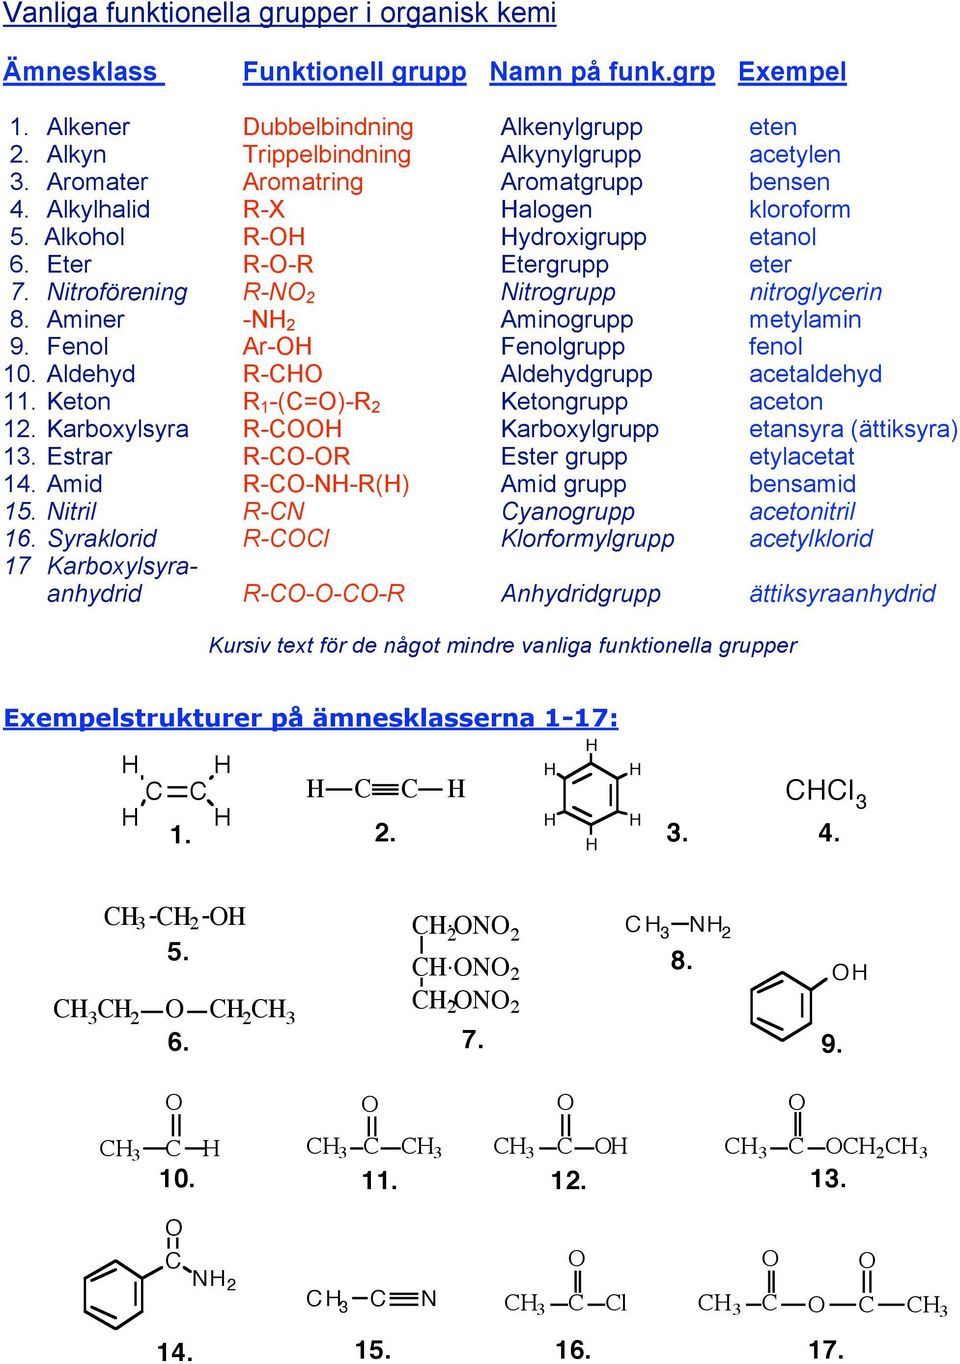 Aminer - 2 Aminogrupp metylamin 9. Fenol Ar- Fenolgrupp fenol 10. Aldehyd - Aldehydgrupp acetaldehyd 11. Keton 1 -(=)- 2 Ketongrupp aceton 12. Karboxylsyra - Karboxylgrupp etansyra (ättiksyra) 13.